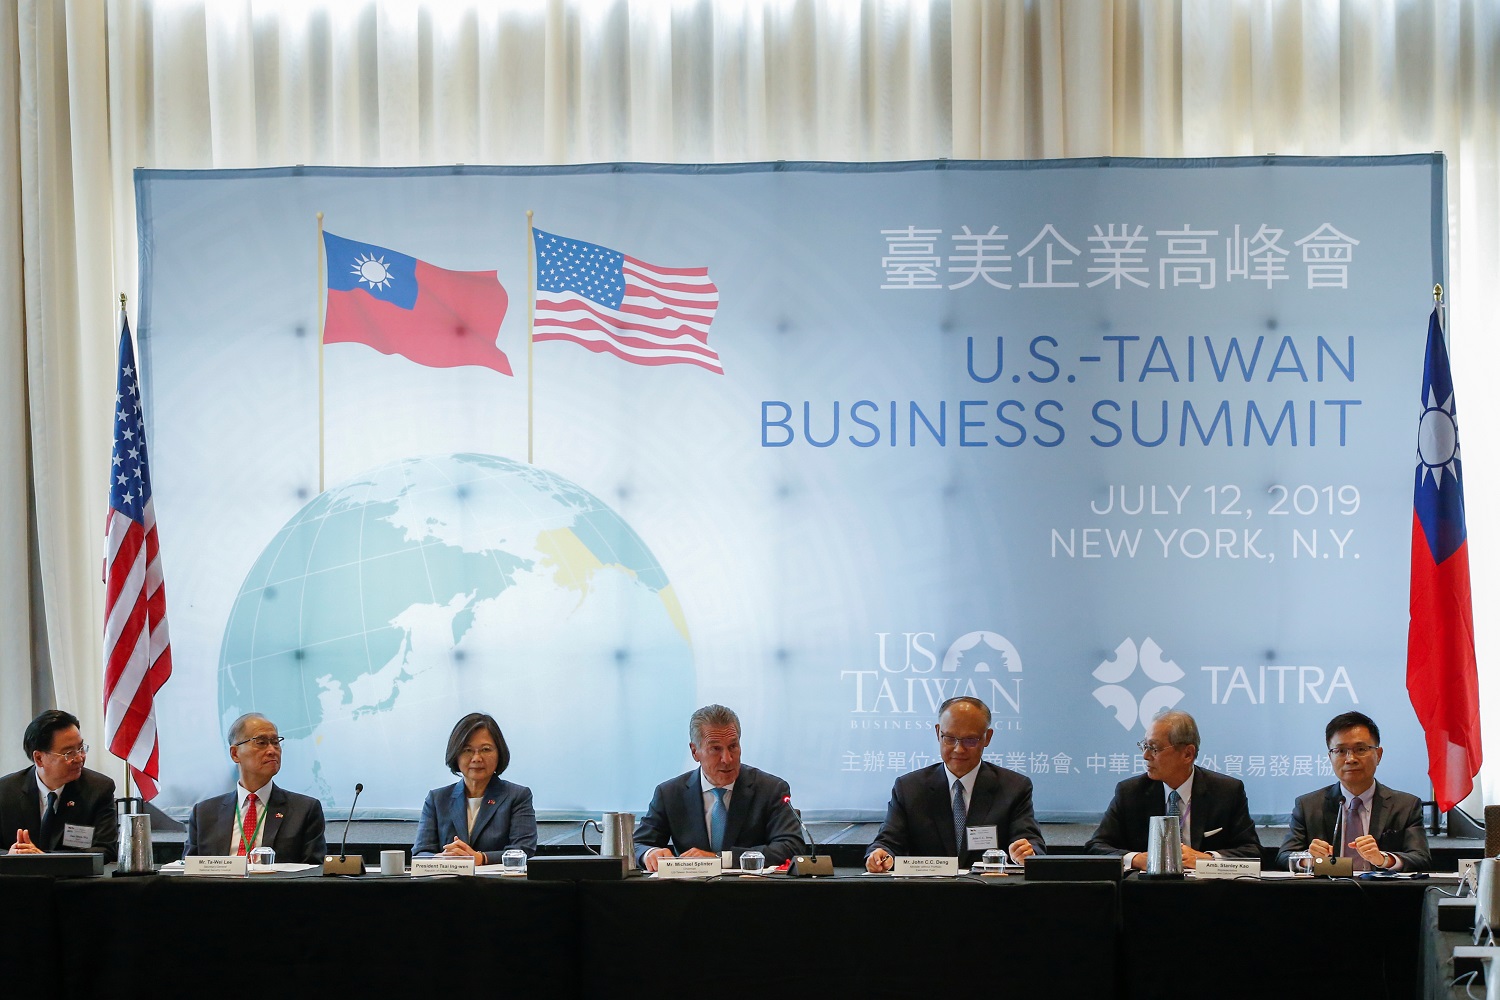 قمة أعمال تايوان في نيويورك. الولايات المتحدة الأميركية، 12 يوليو 2019. (رويترز) / إدواردو مونوز